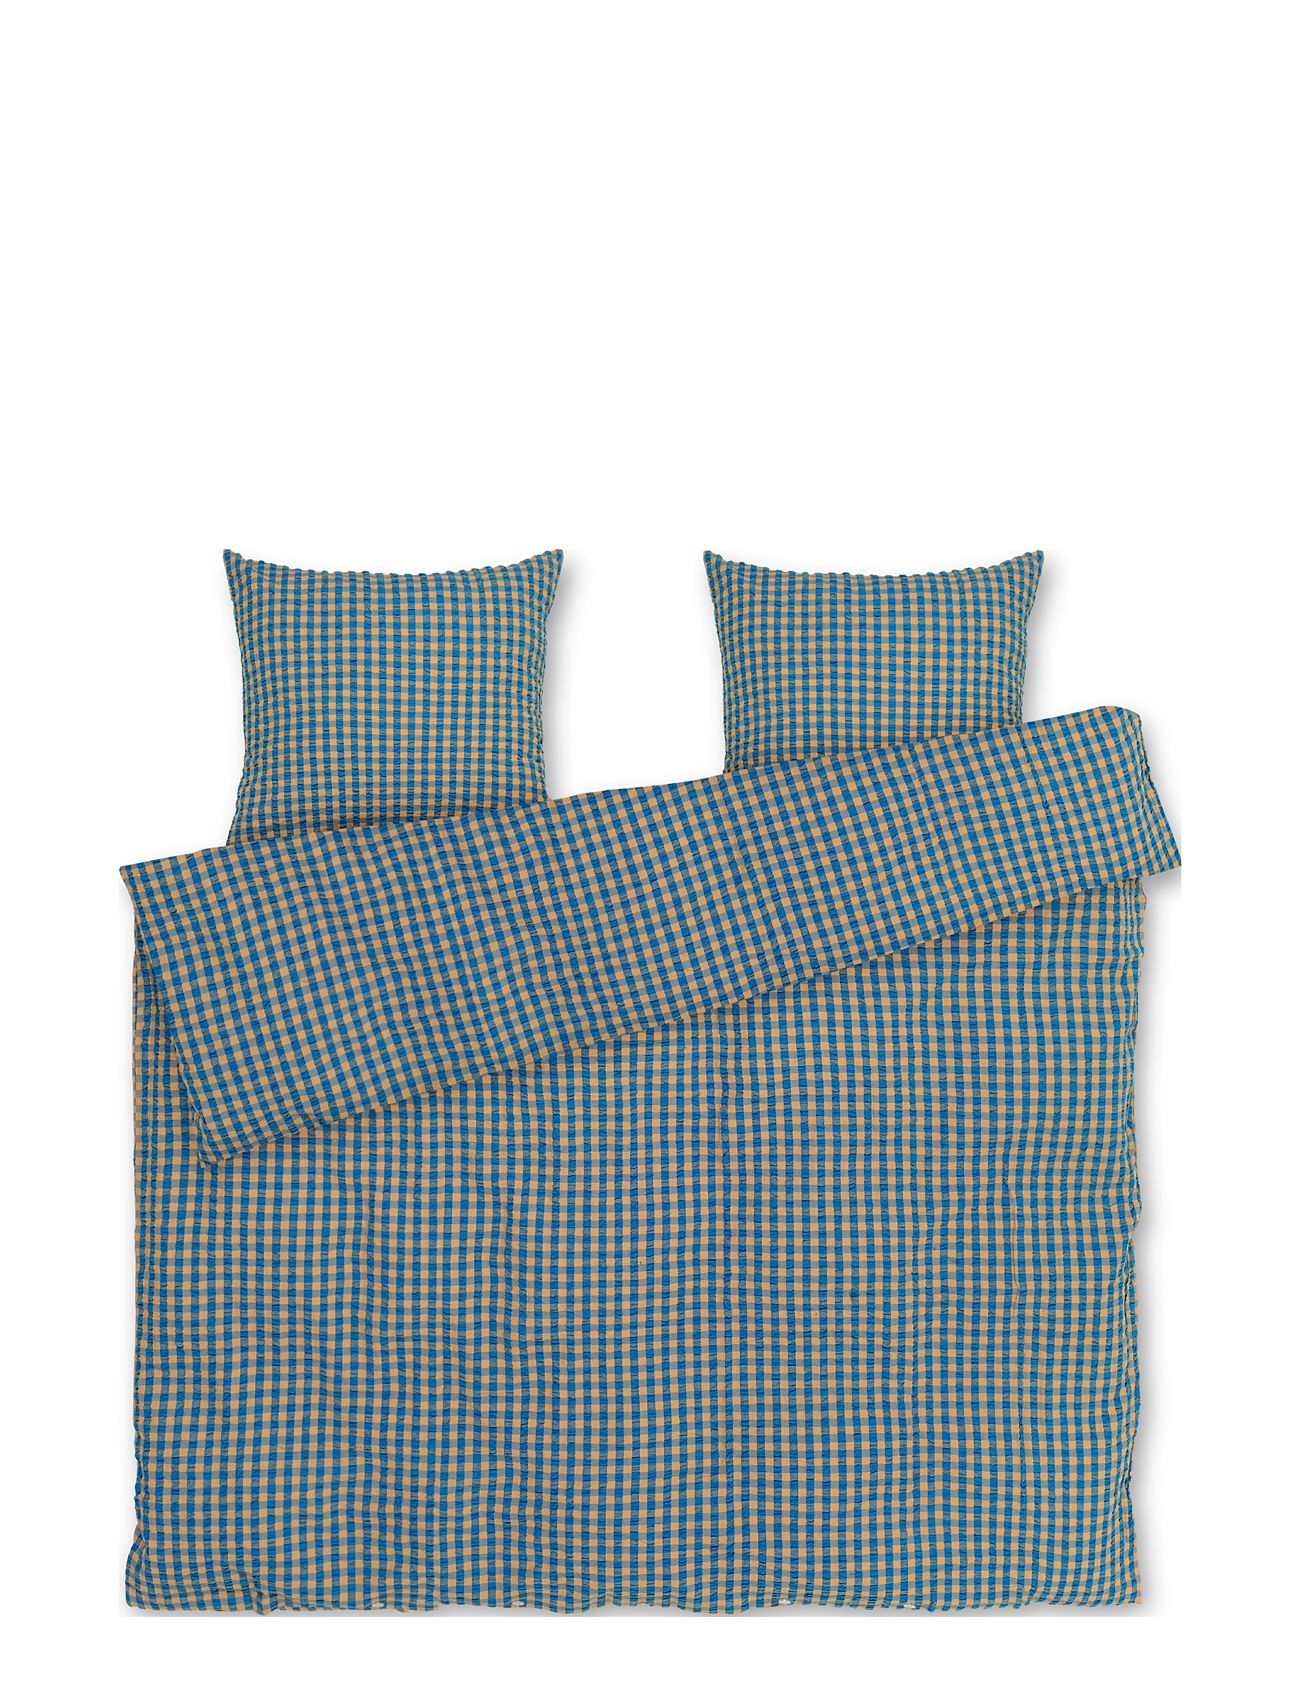 Bæk&Bølge Sengetøj 200X220 Cm Blå/Okker Dk Home Textiles Bedtextiles Bed Sets Blue Juna